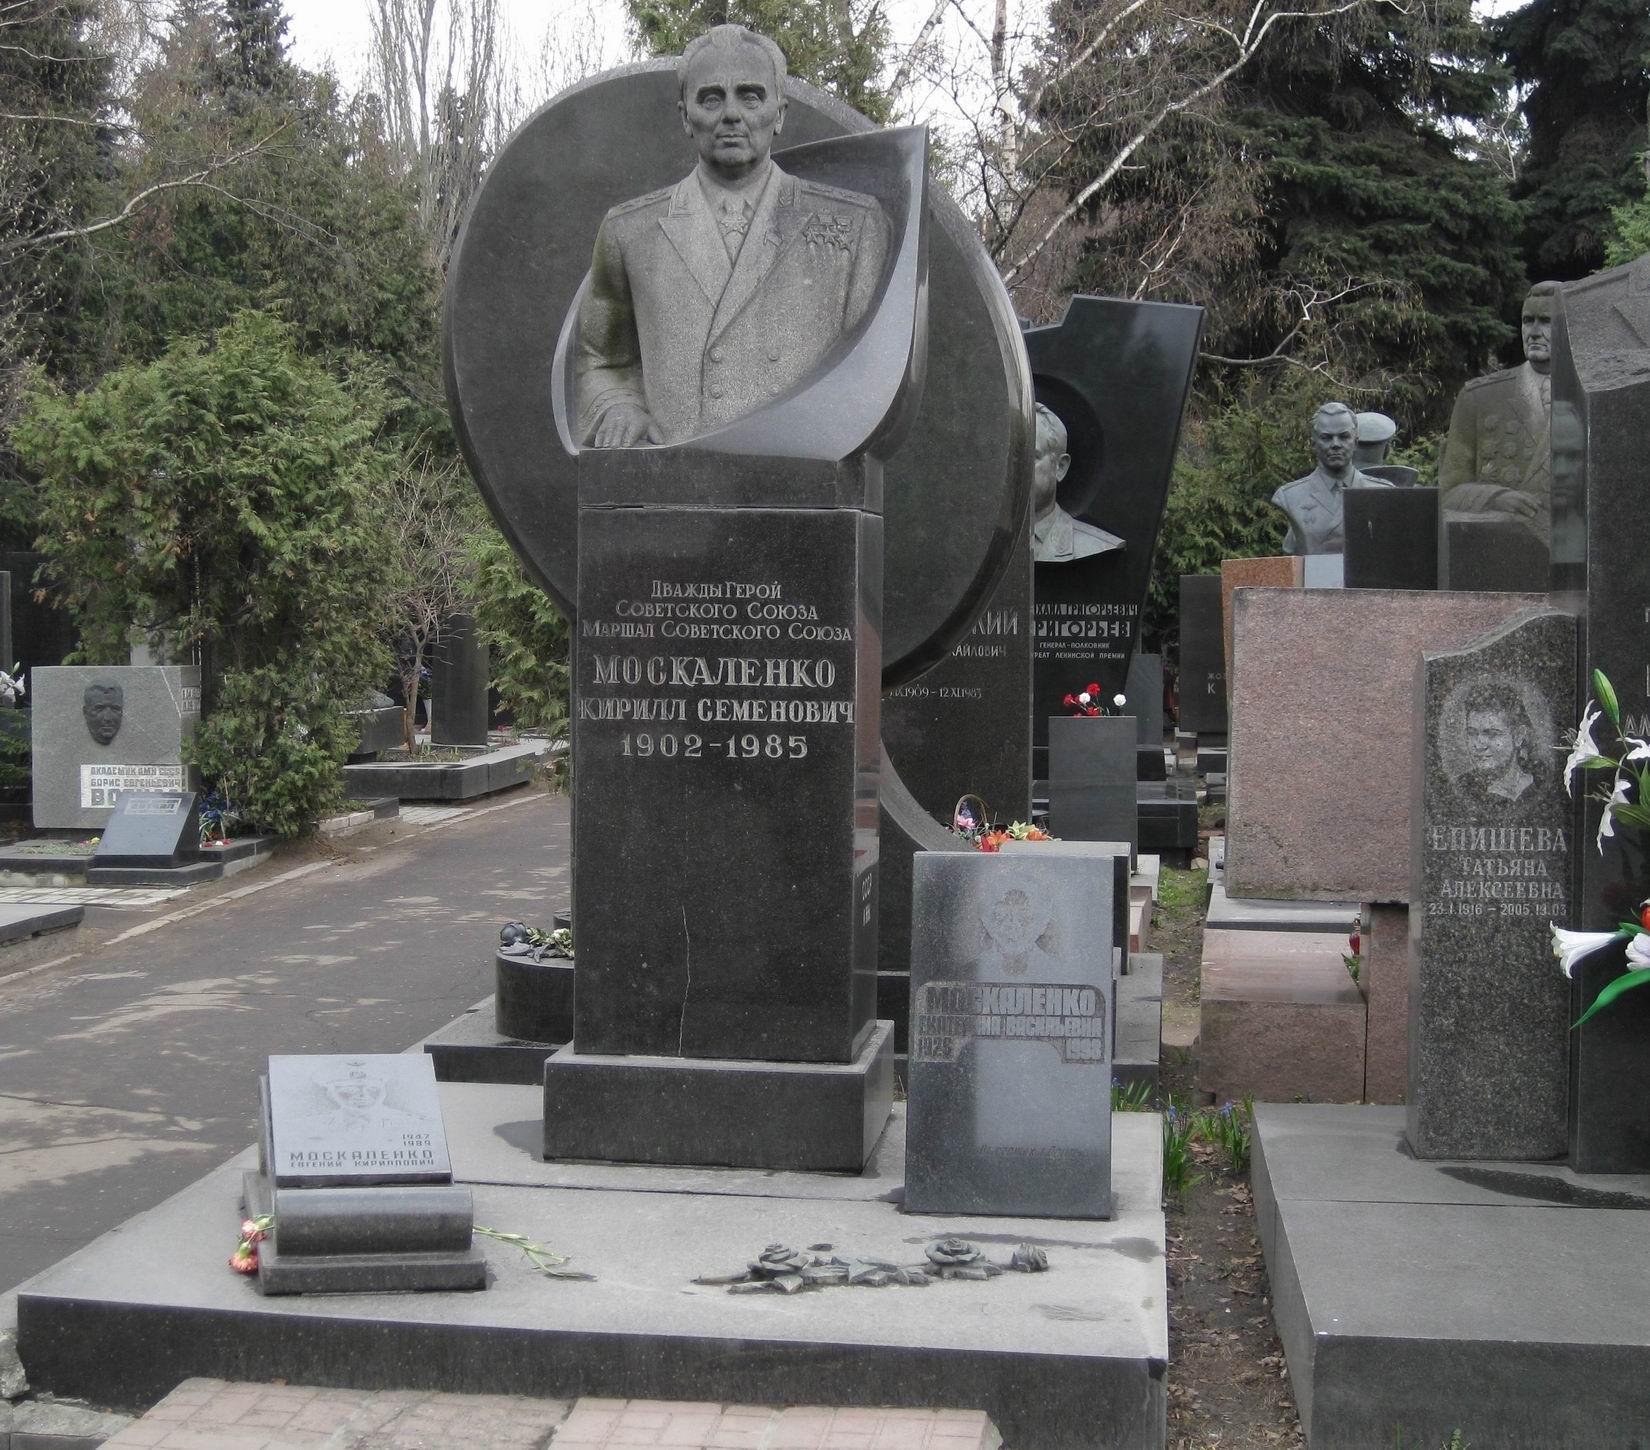 Памятник на могиле Москаленко К.С. (1902-1985), ск. В.Сонин, арх. Е.Ефремов, на Новодевичьем кладбище (7-22-1).